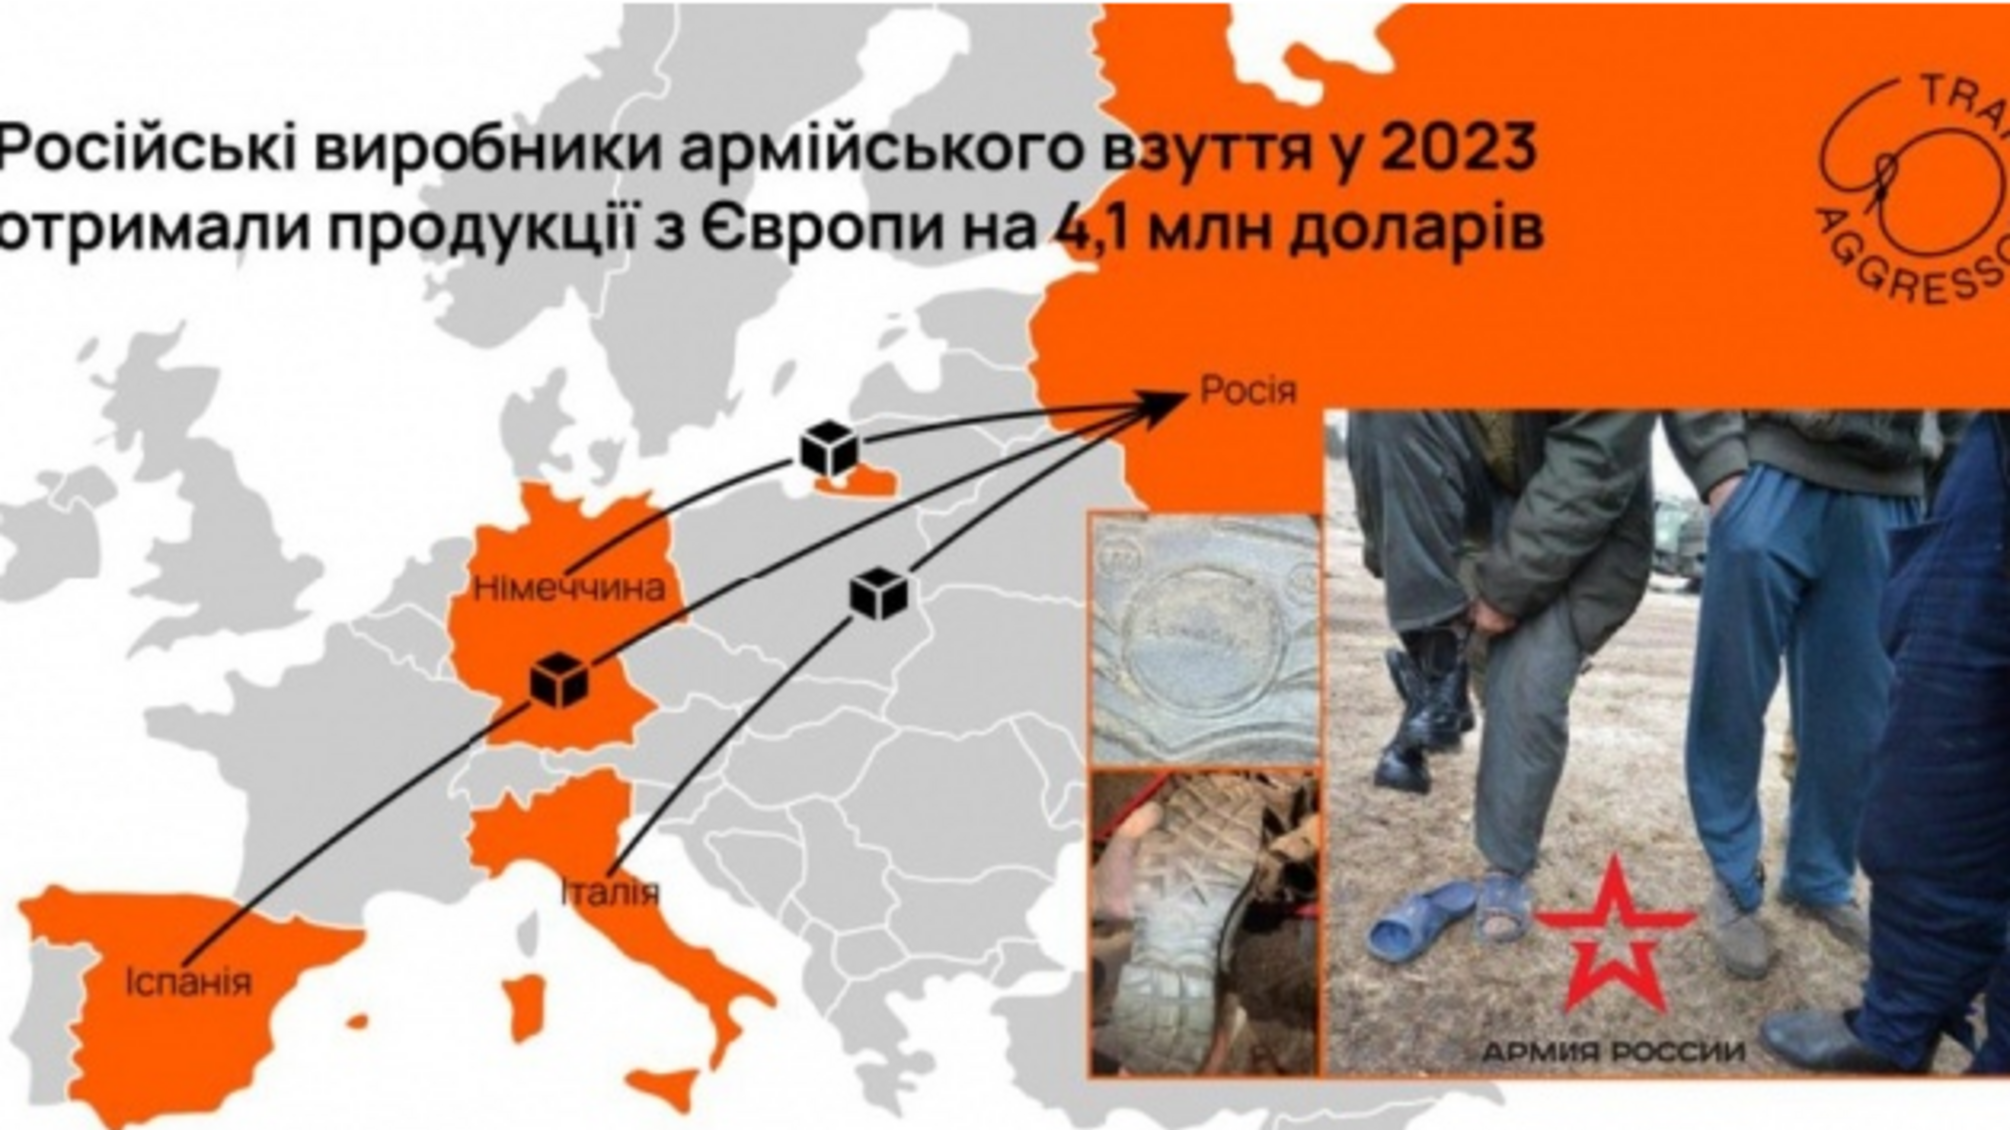 Російські виробники взуття для військових закуповують продукцію у європейських компанії за 4,1 млн грн, - Trap Aggressor